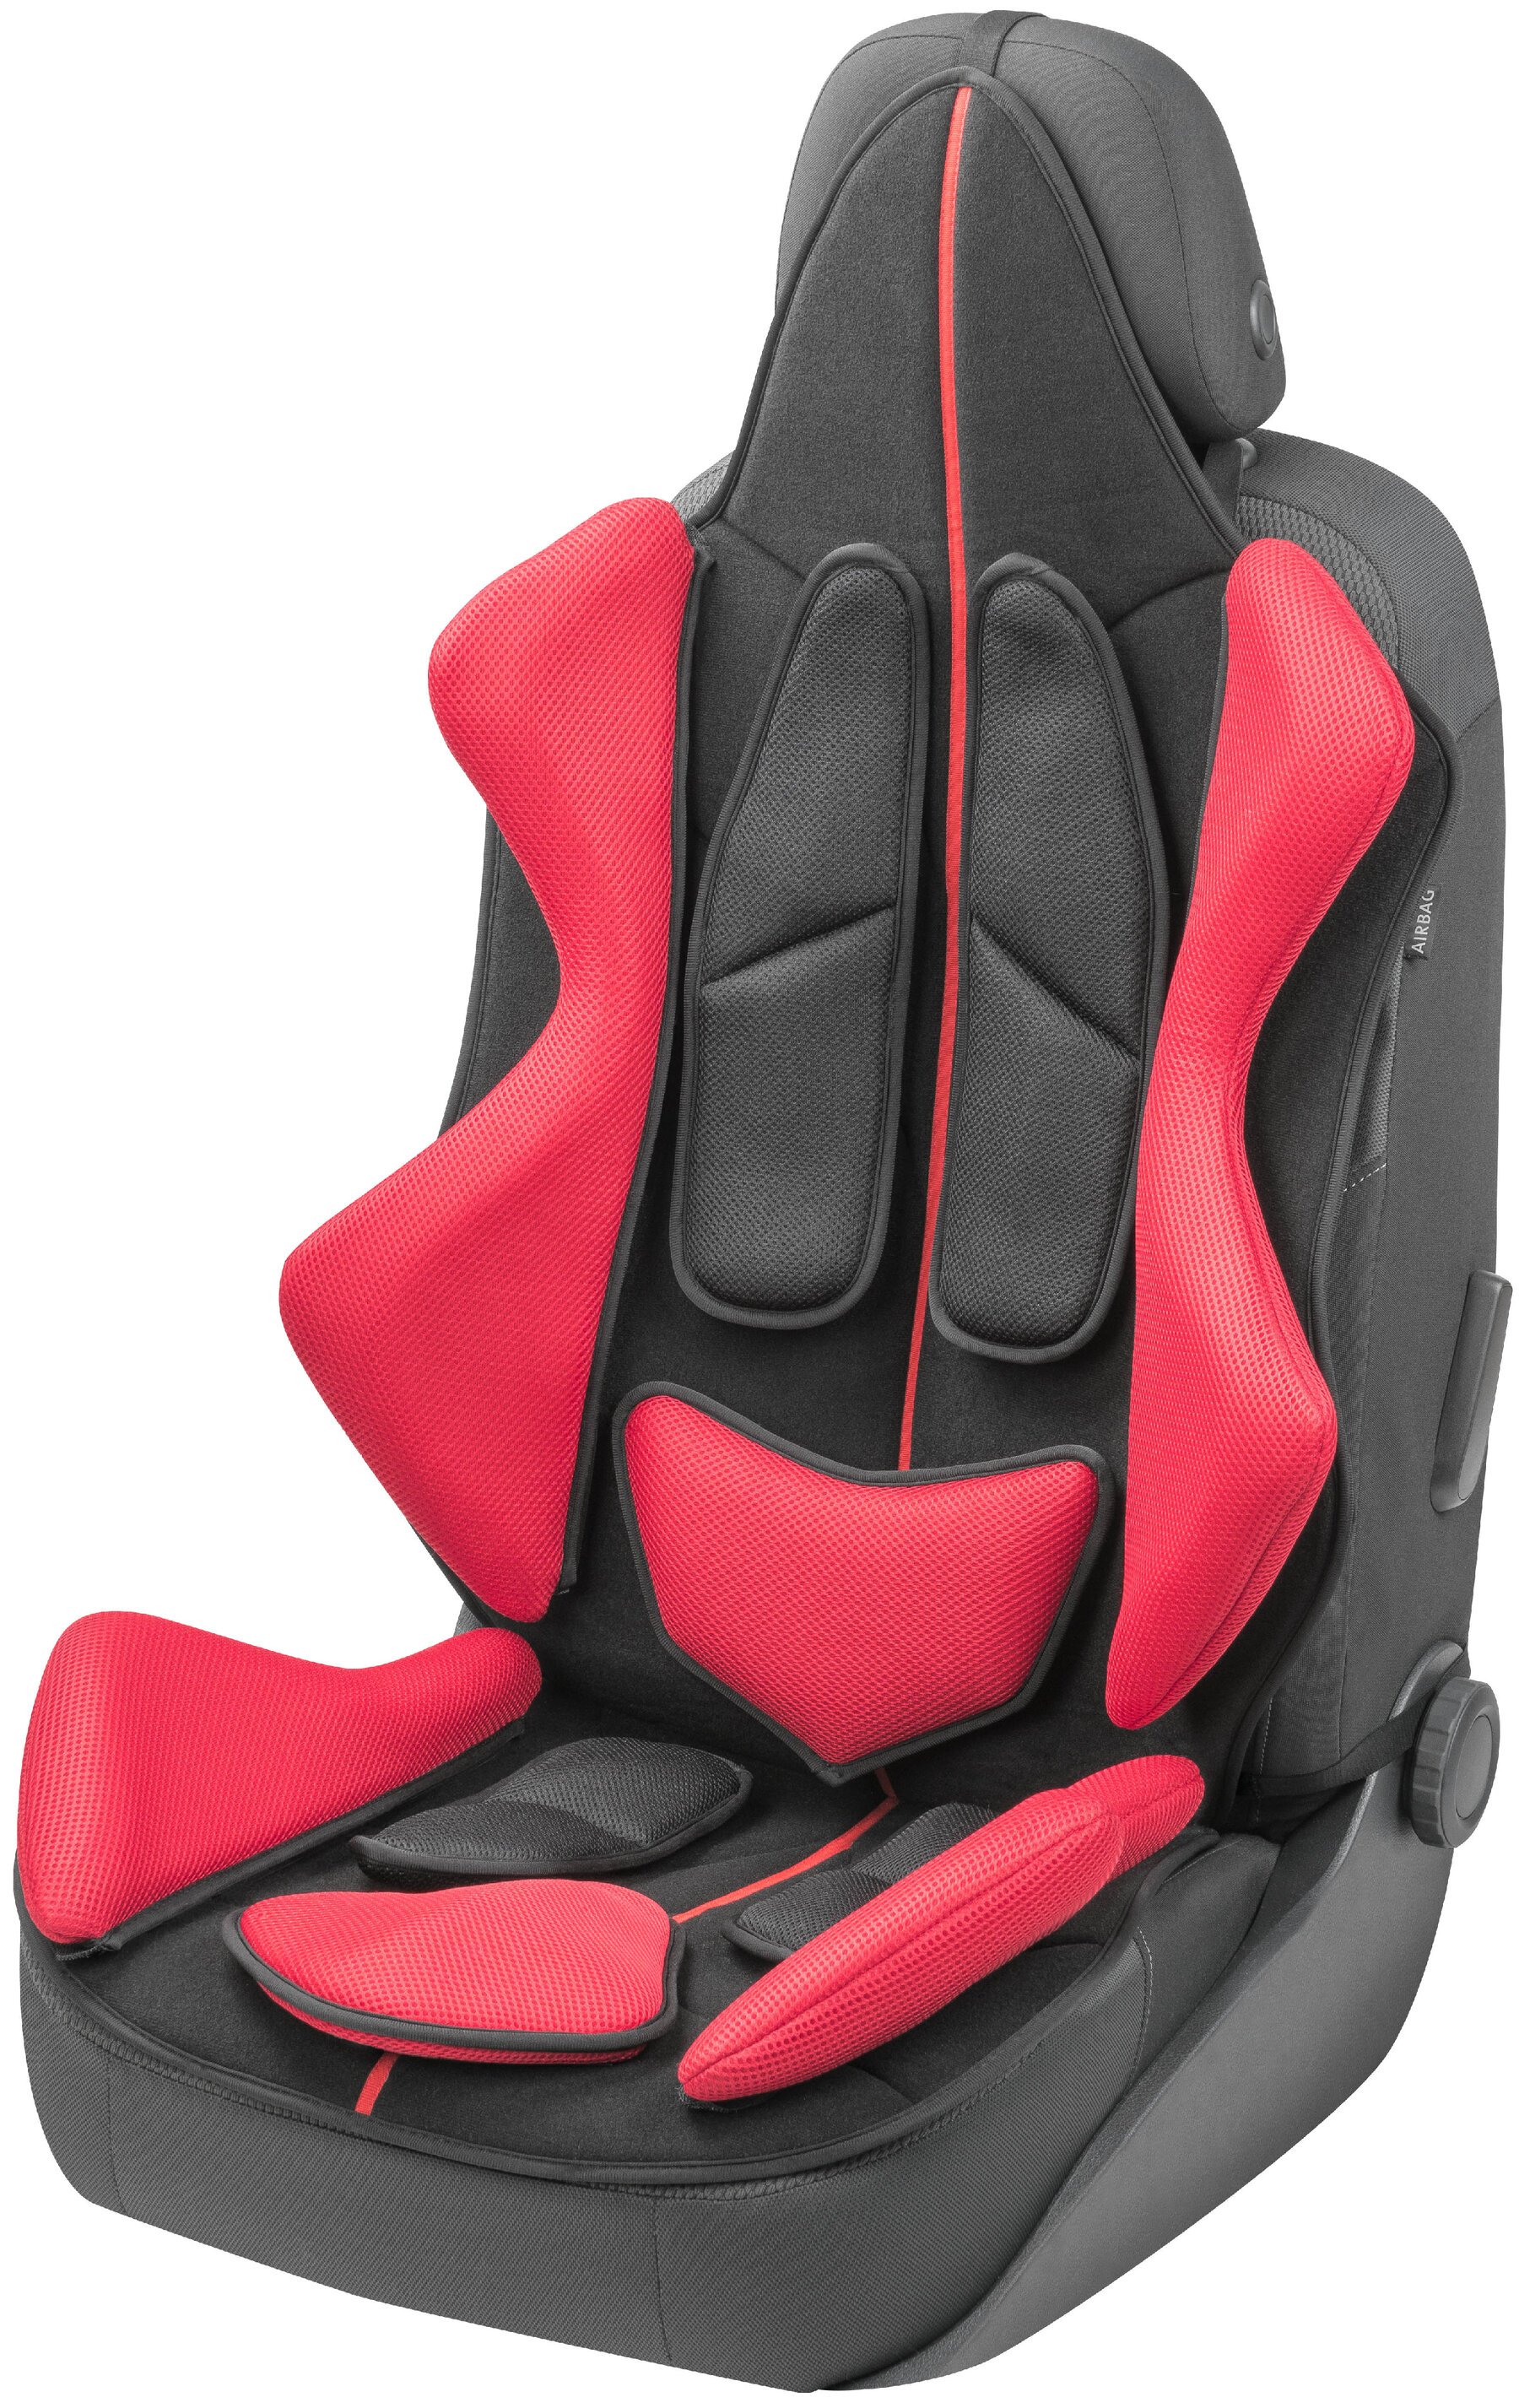 Housses de sièges X-Race noir rouge